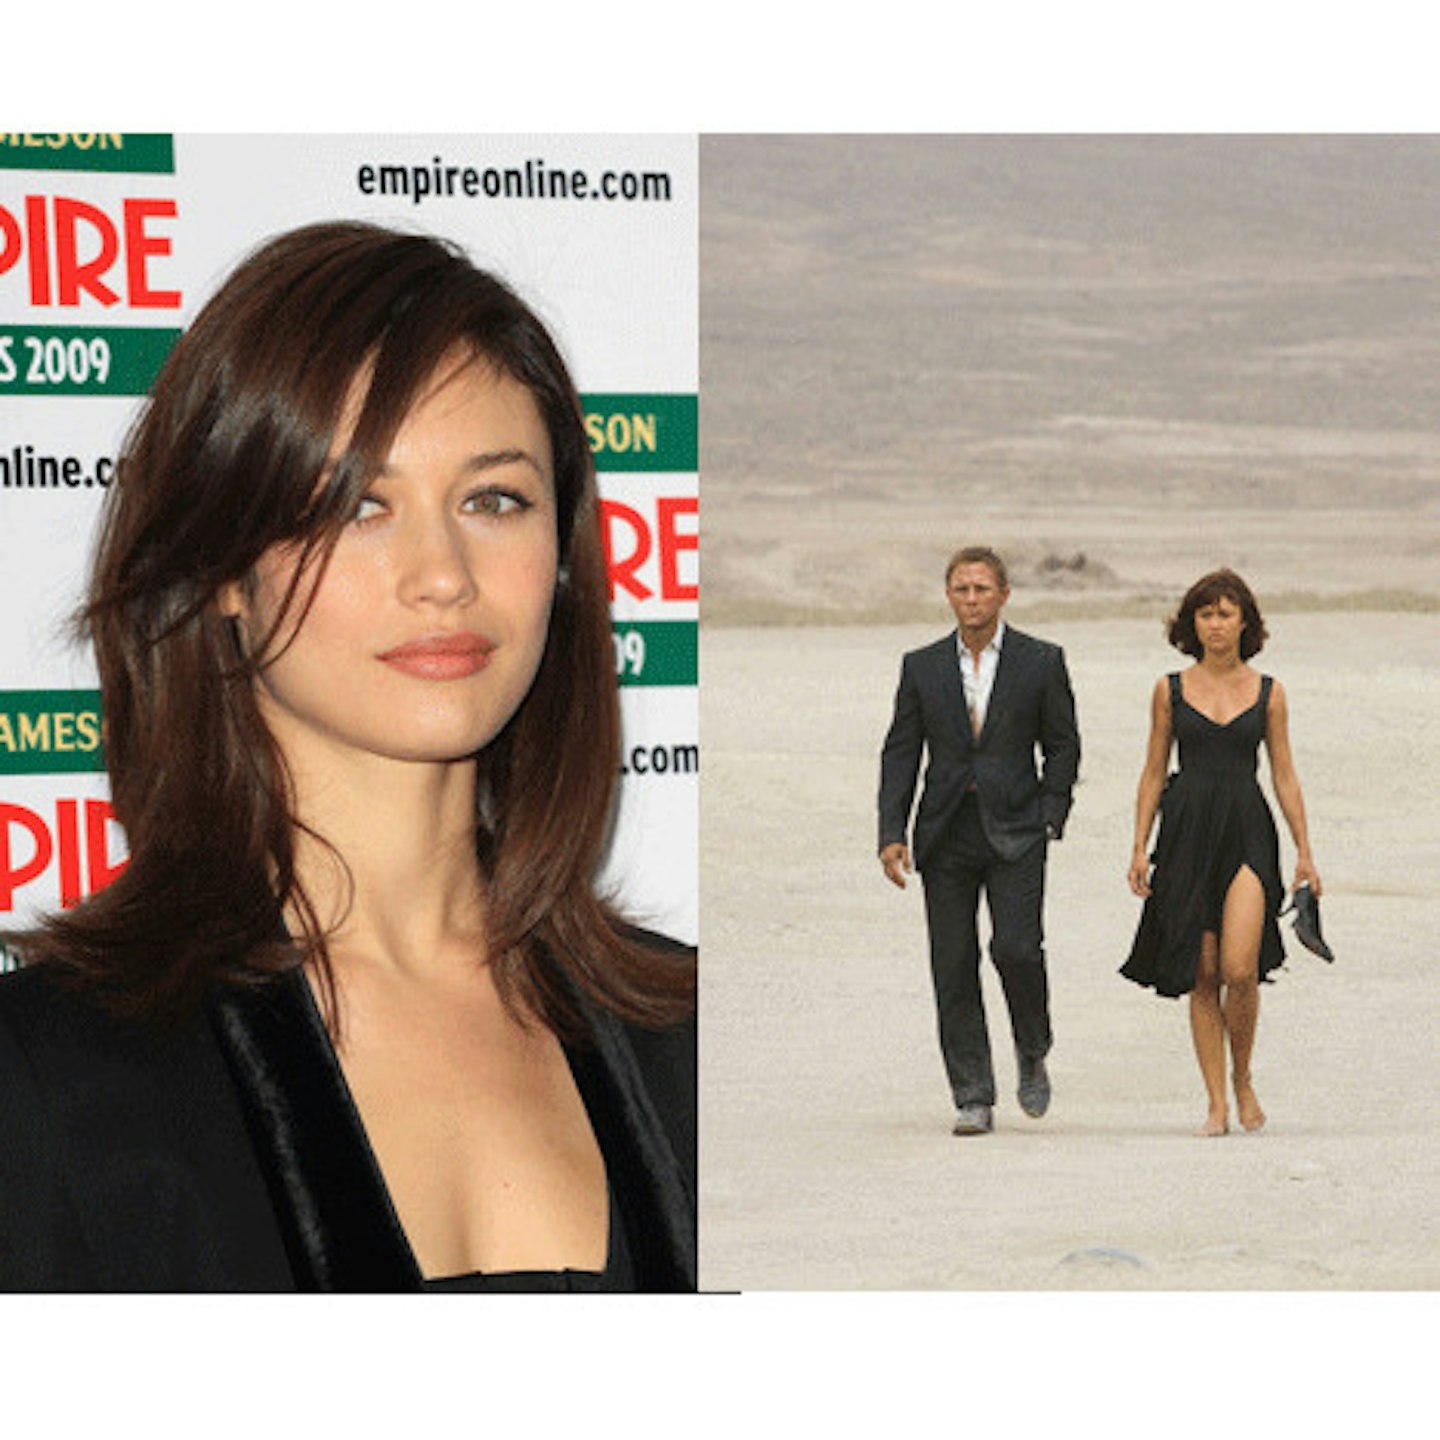 Bond girl Lea Seydoux reveals her beauty secrets